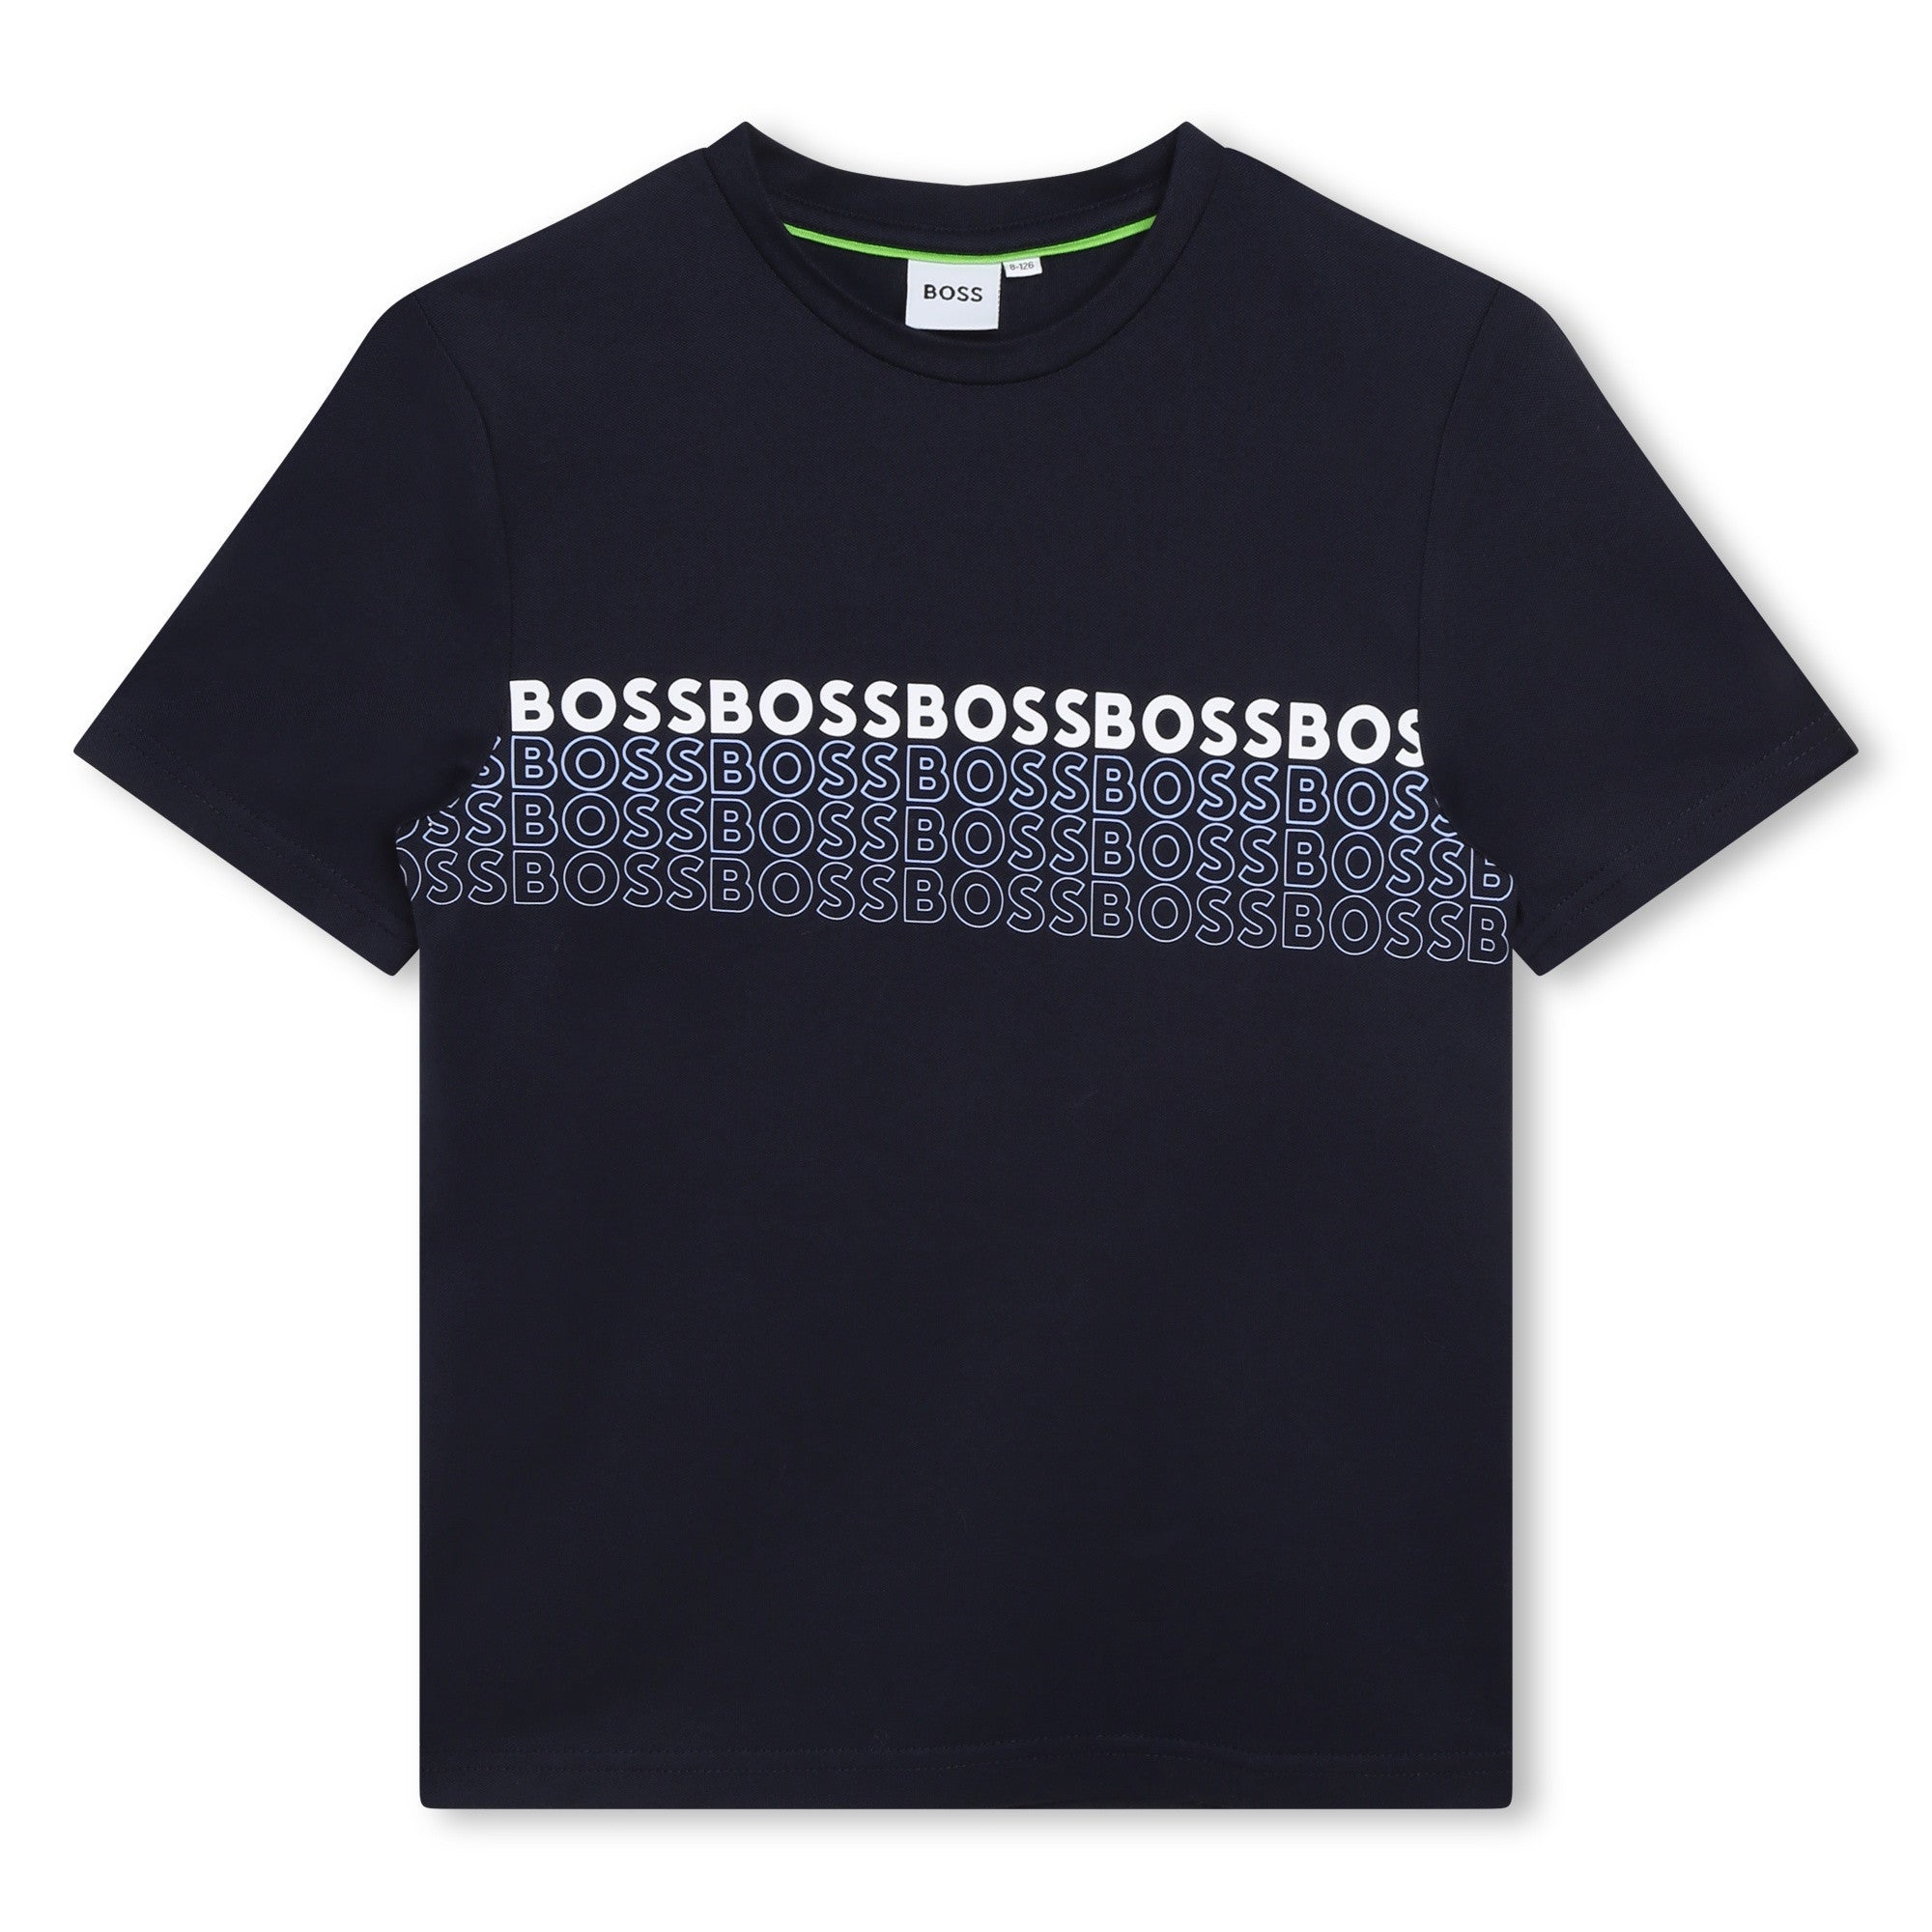 Boss T-shirt for Boys